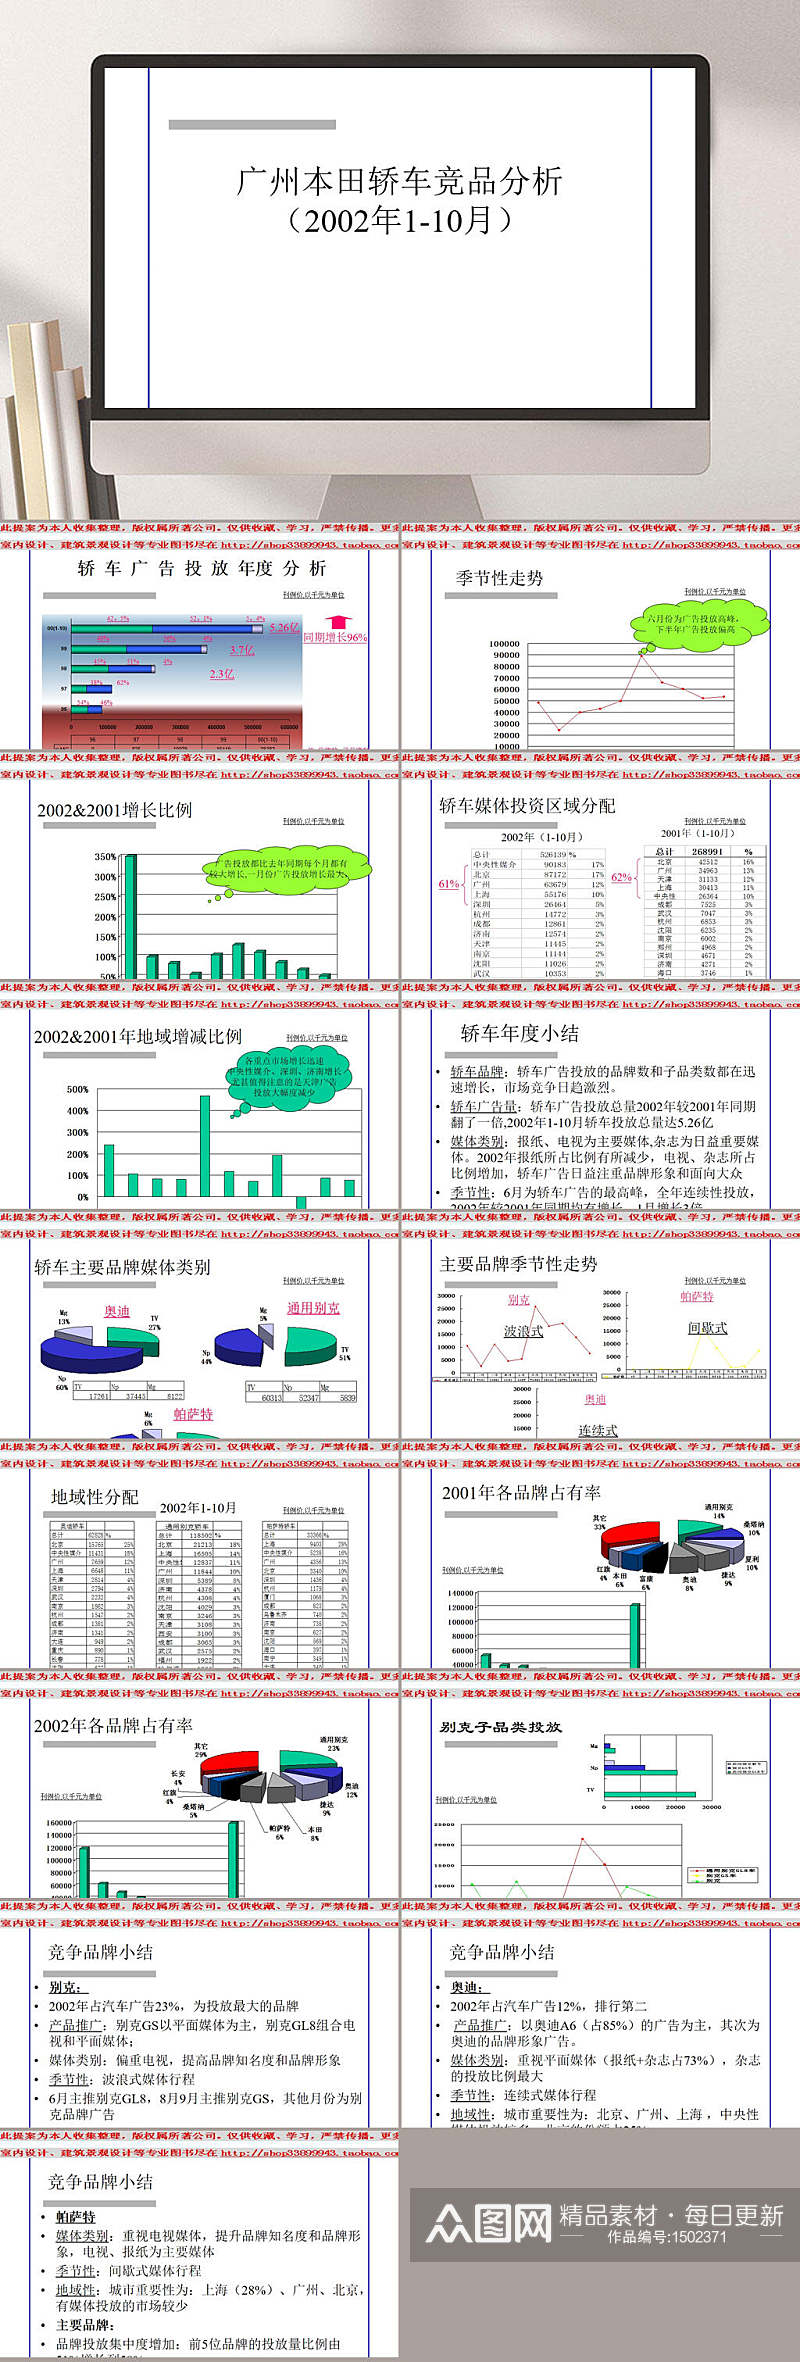 广州本田轿车竞品分析PPT模板素材